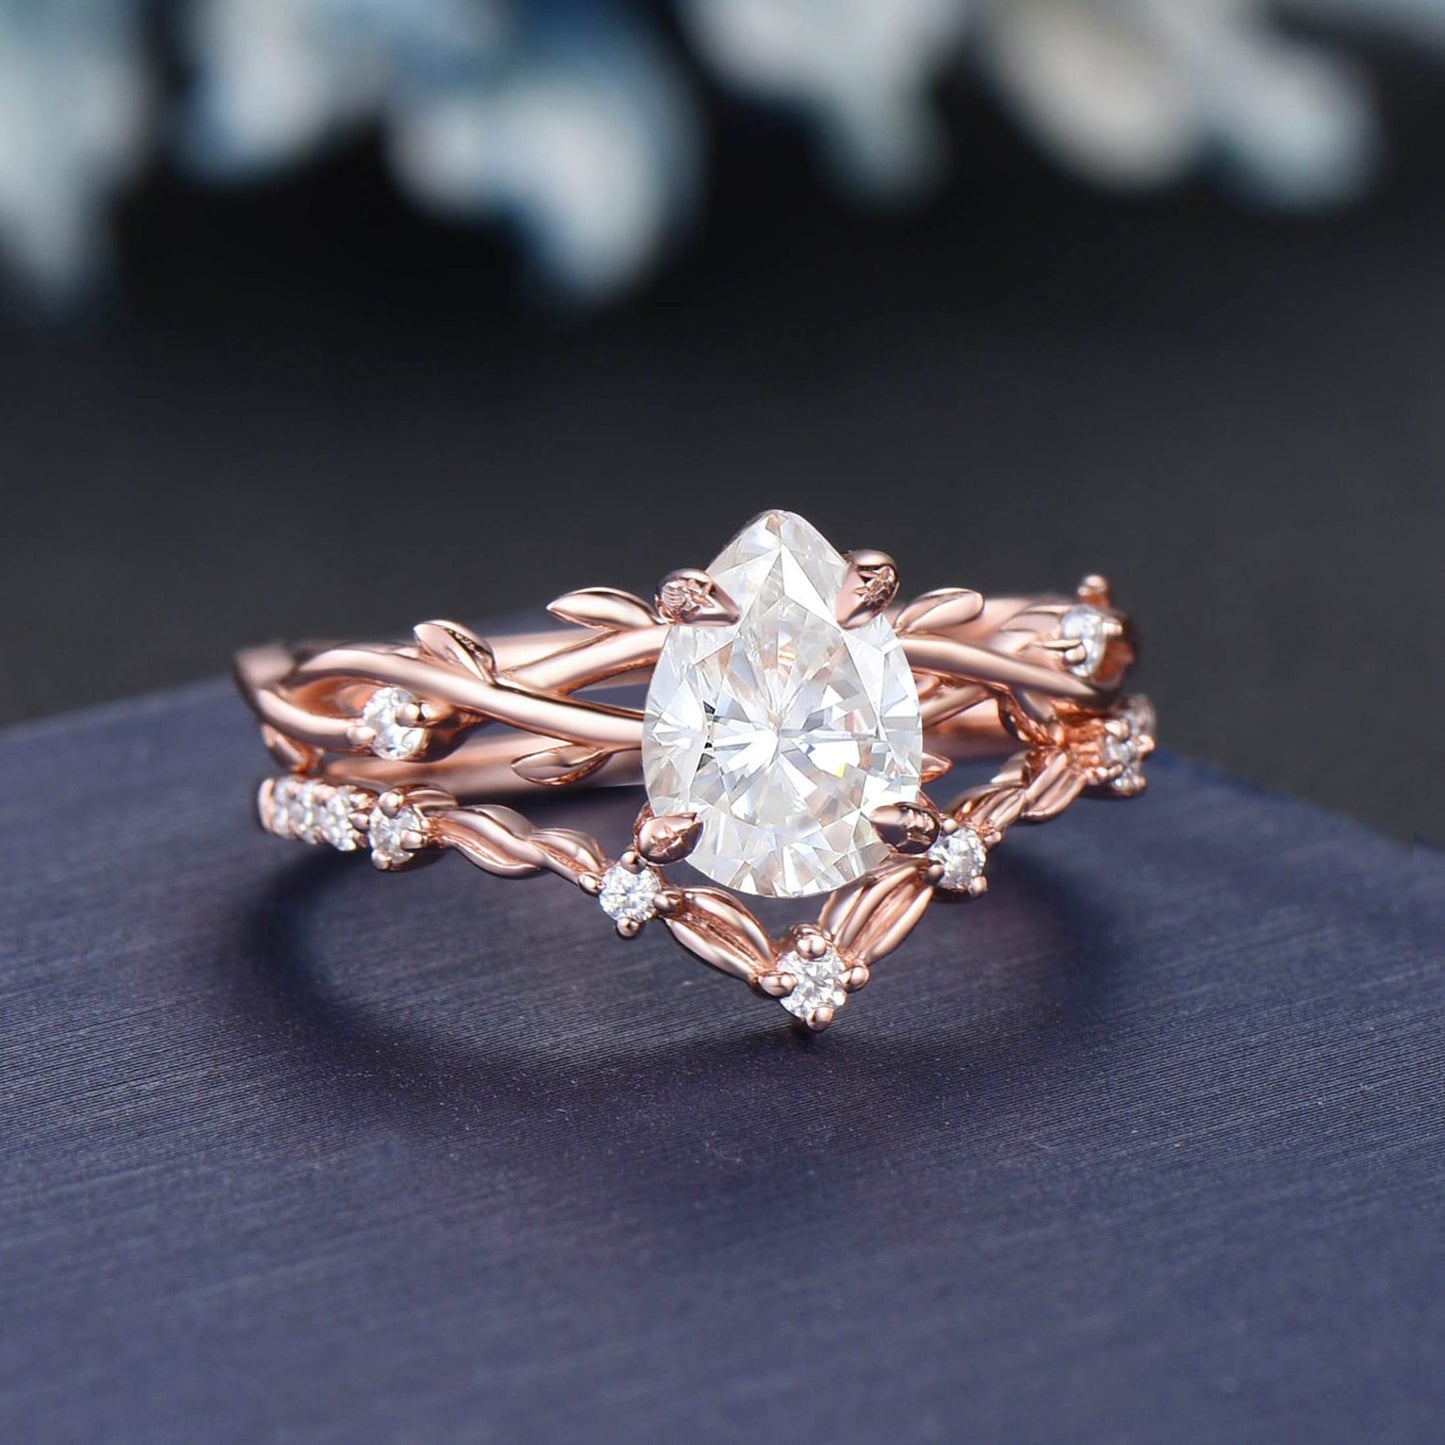 Twig Vine Moissanite Engagement Ring Set 14K Rose Gold 1.25ct Pear Lab Grown Diamond Wedding Ring Set with IGI Certificate Branch Bridal Set